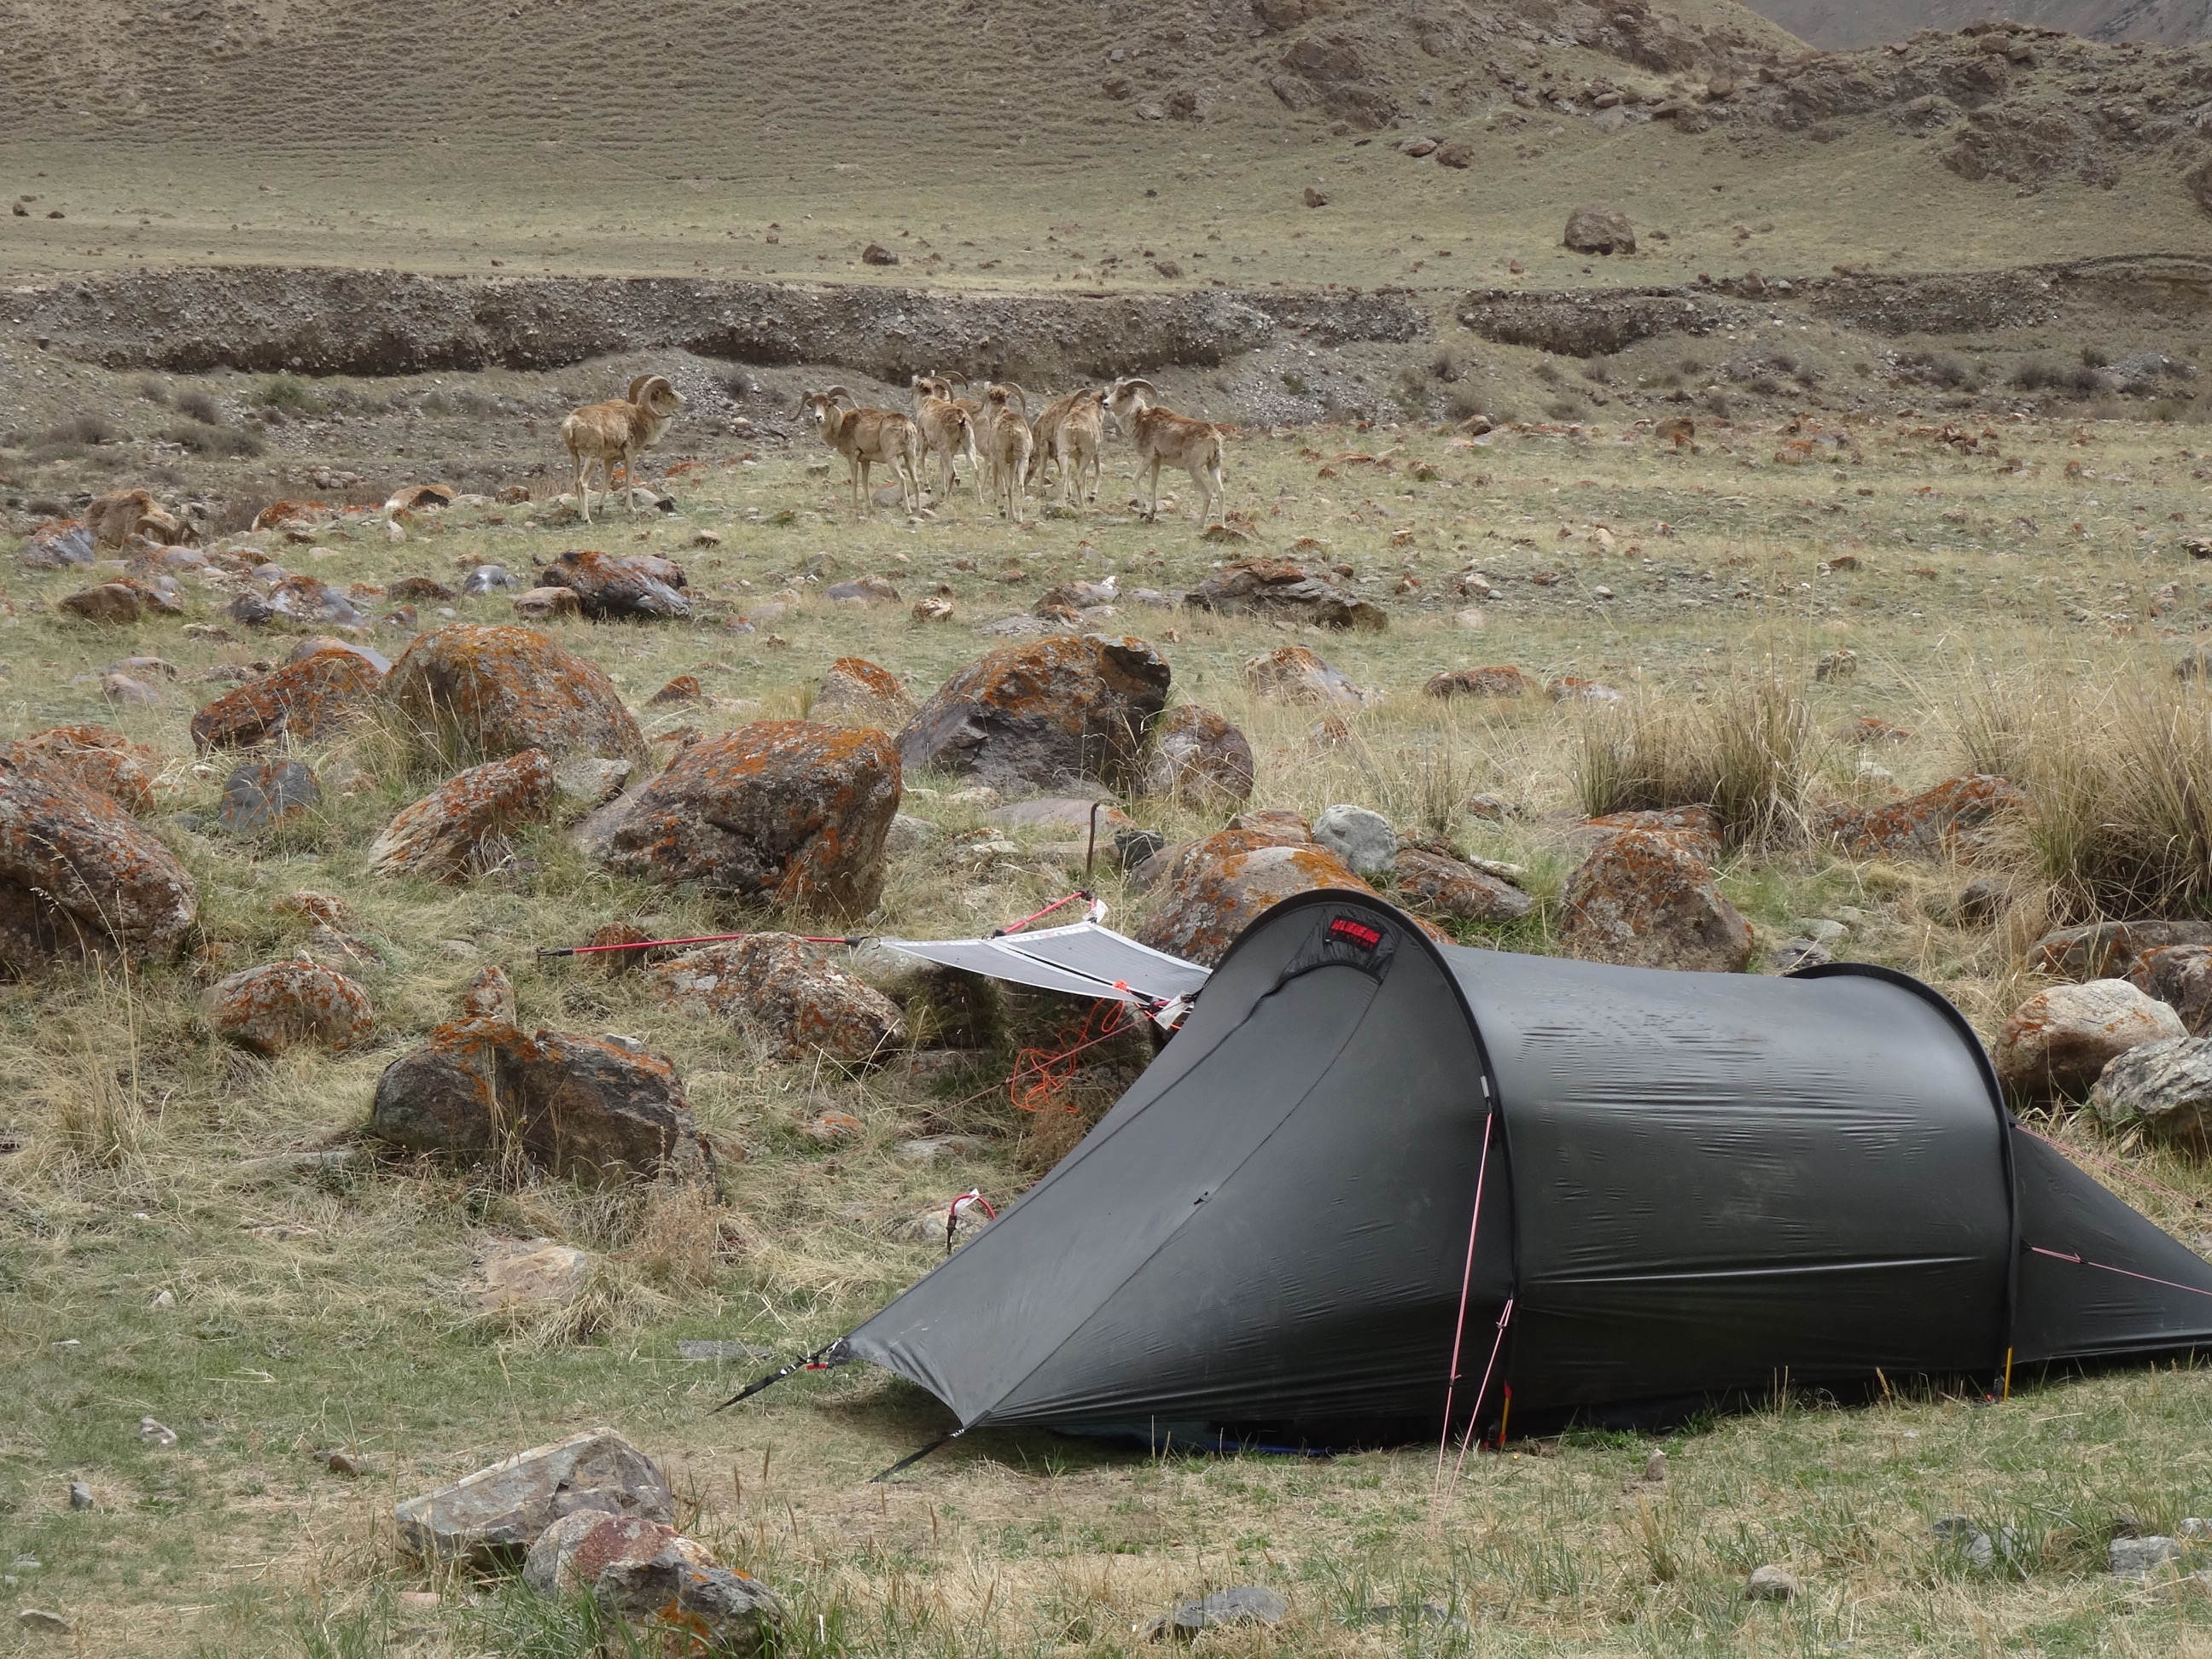 Tent and Argali Sheep